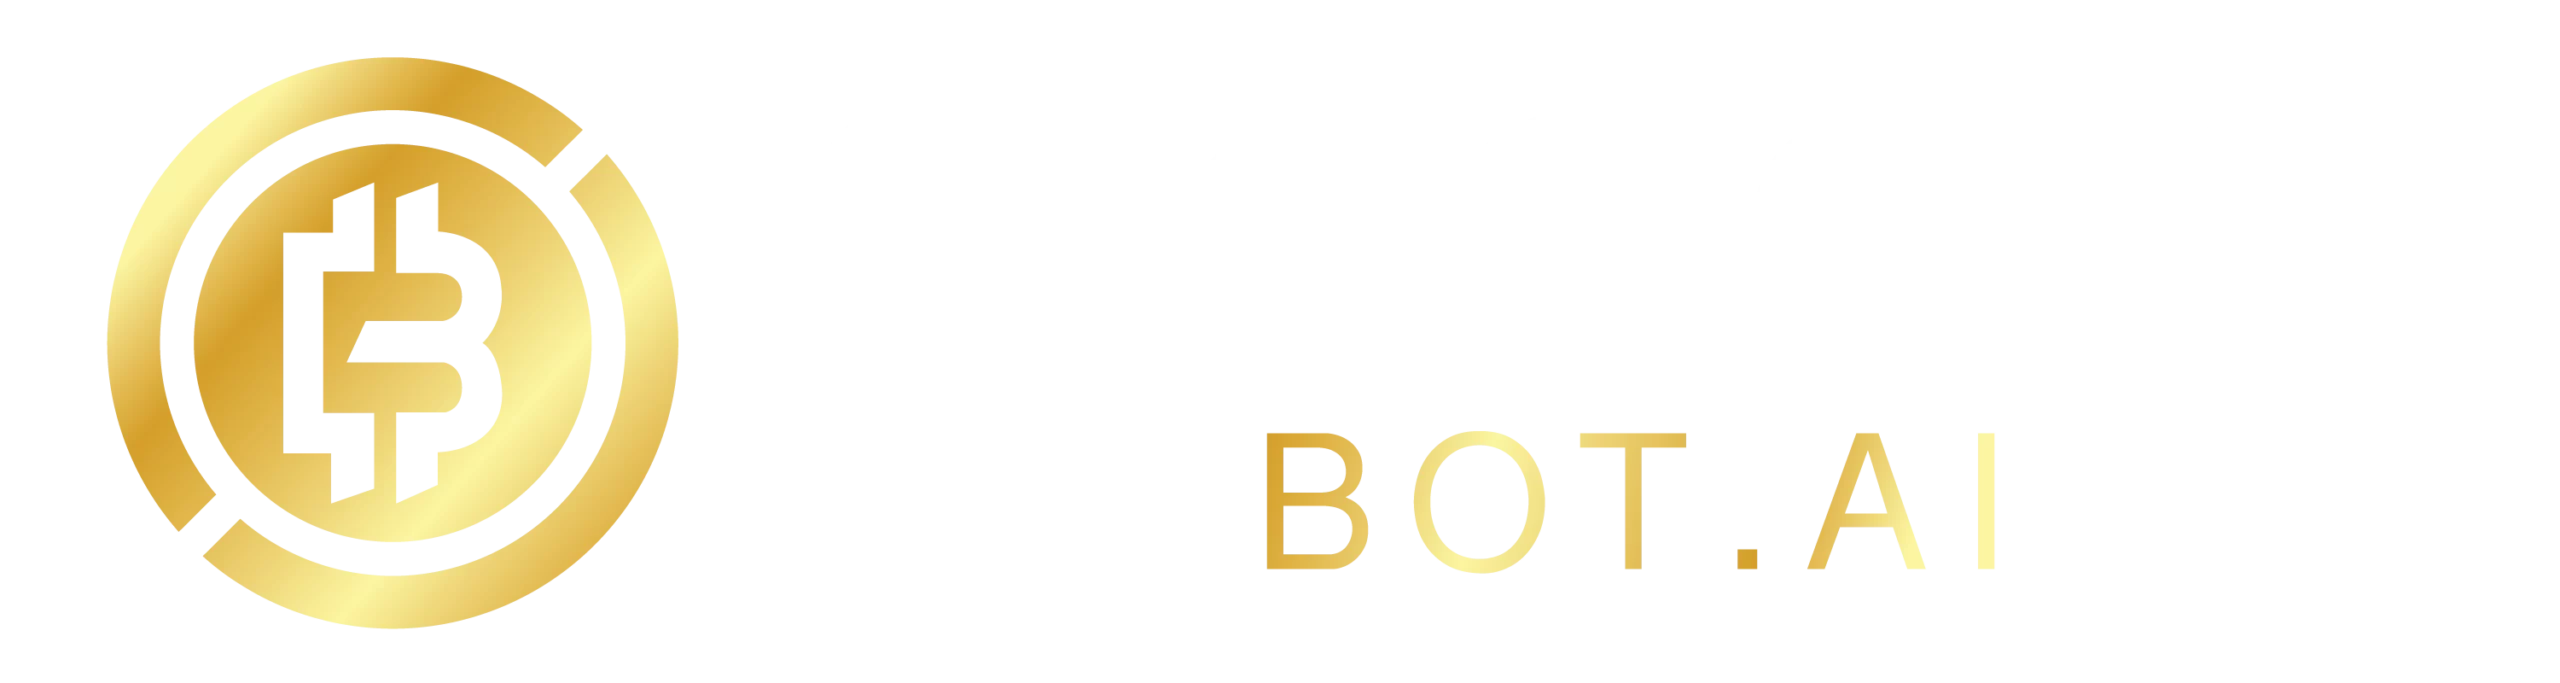 Bitcoinbot